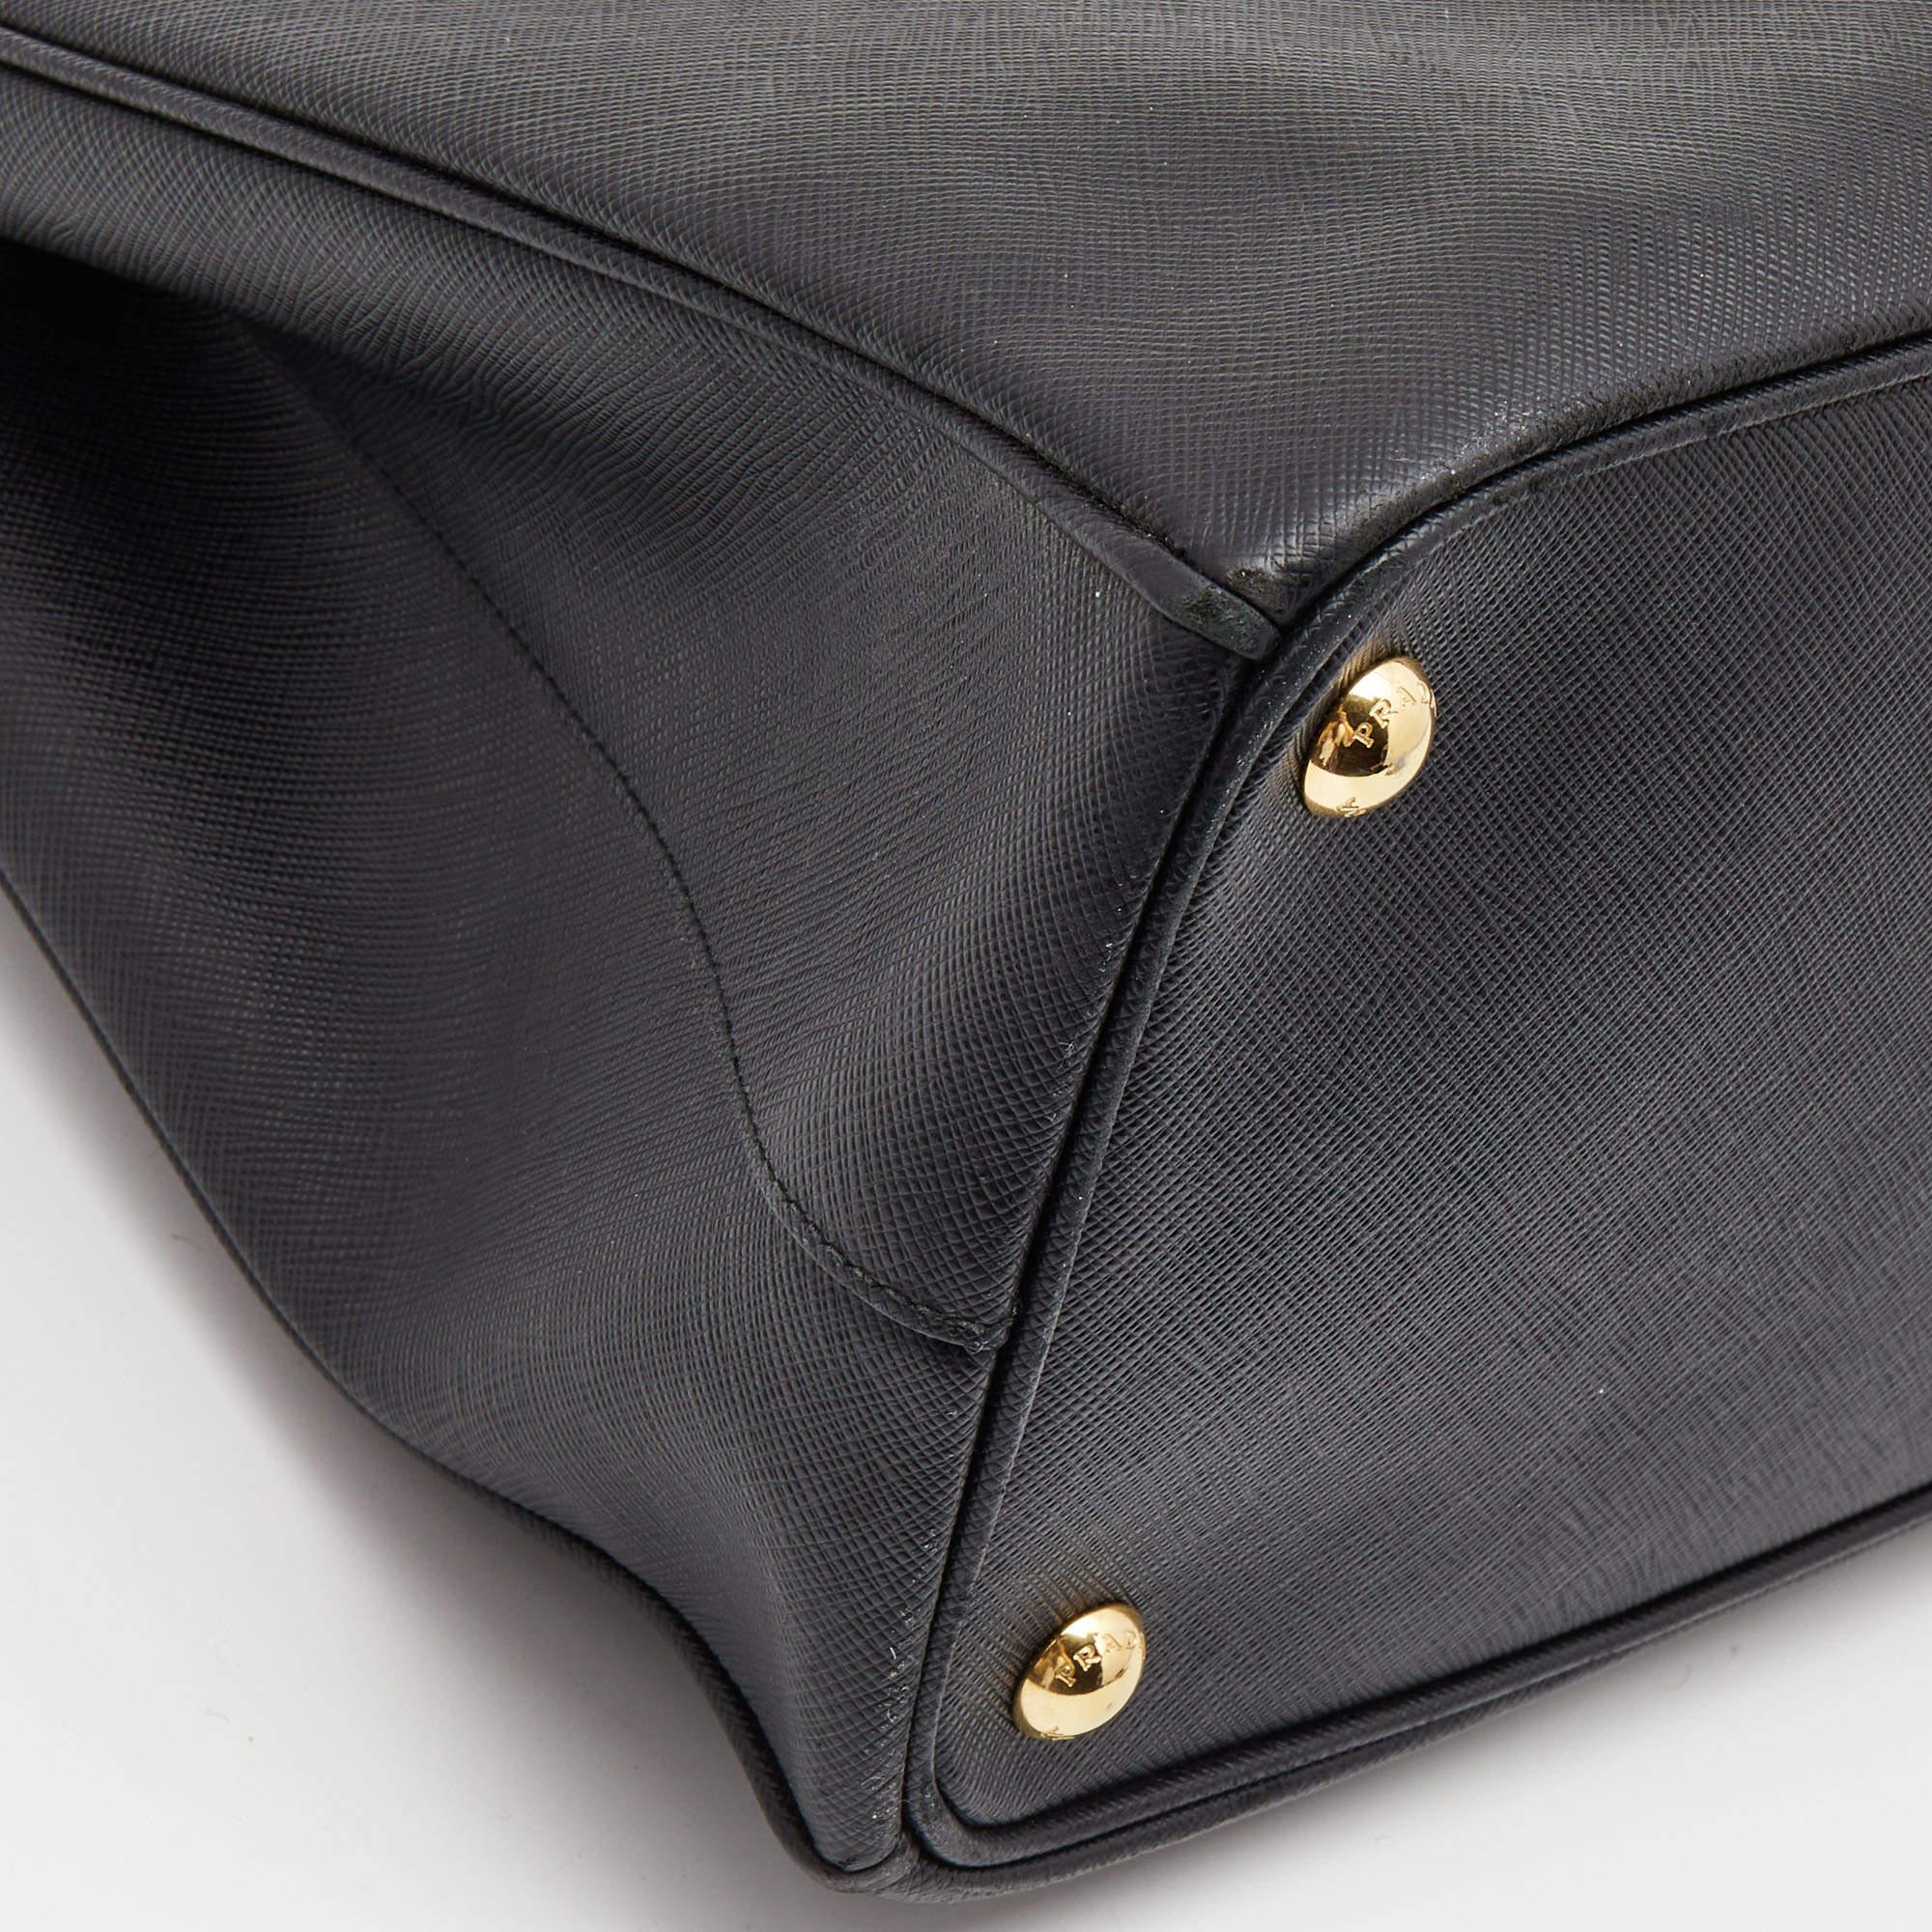 Prada Black Saffiano Leather Medium Galleria Double Zip Tote 8